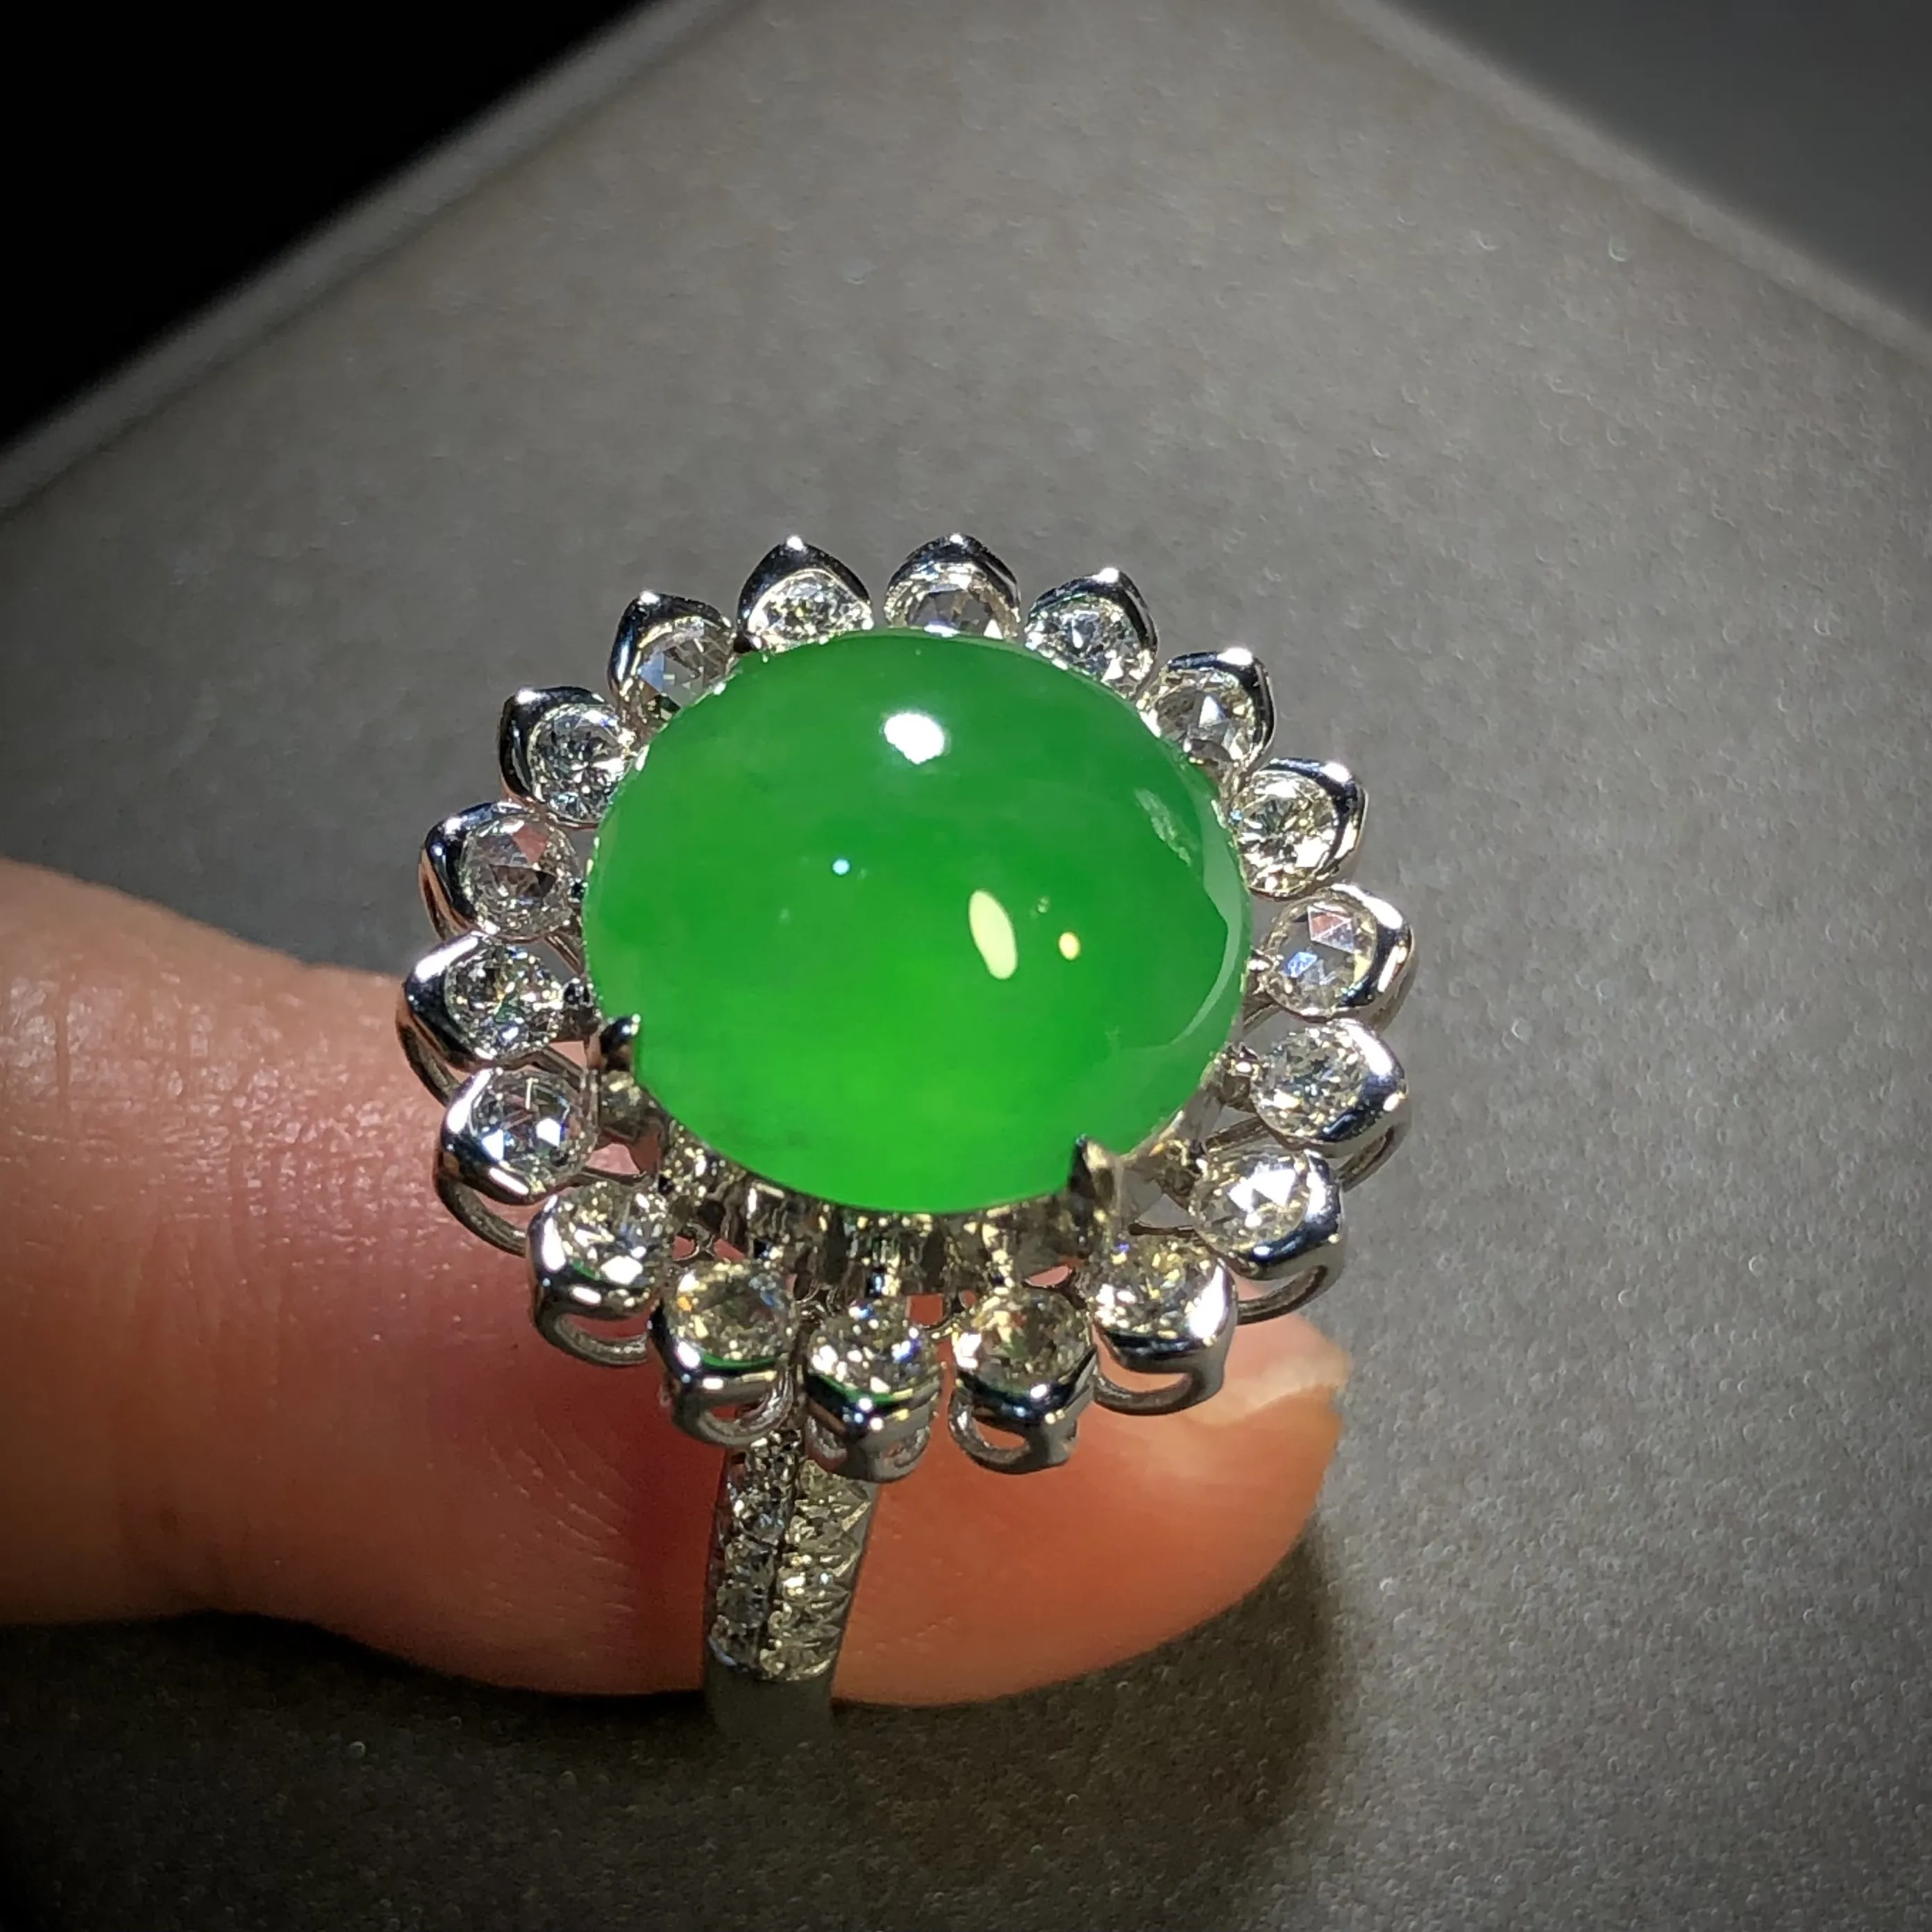 高质量阳绿翡翠绿蛋面戒指，
裸石12-12-6mm，
13.5#，18K金，南非钻，